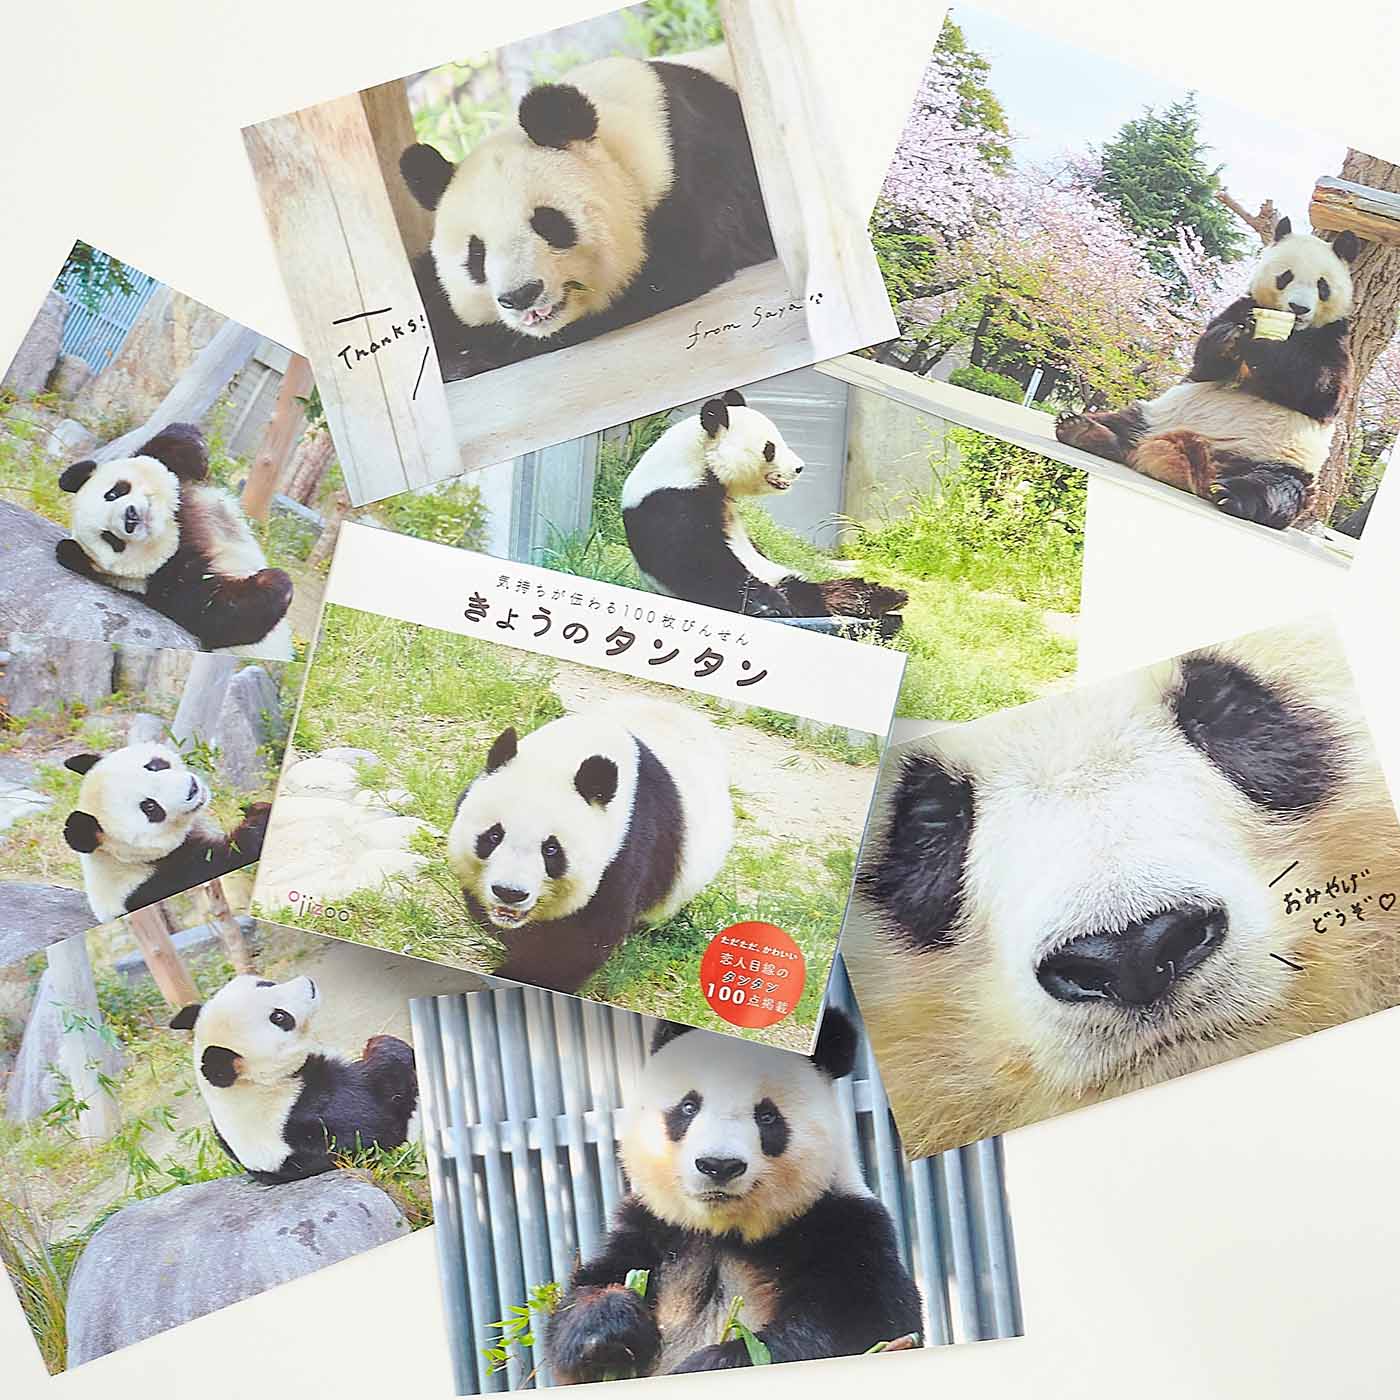 王子動物園 パンダのタンタン ポストカード④ジャイアントパンダ ...